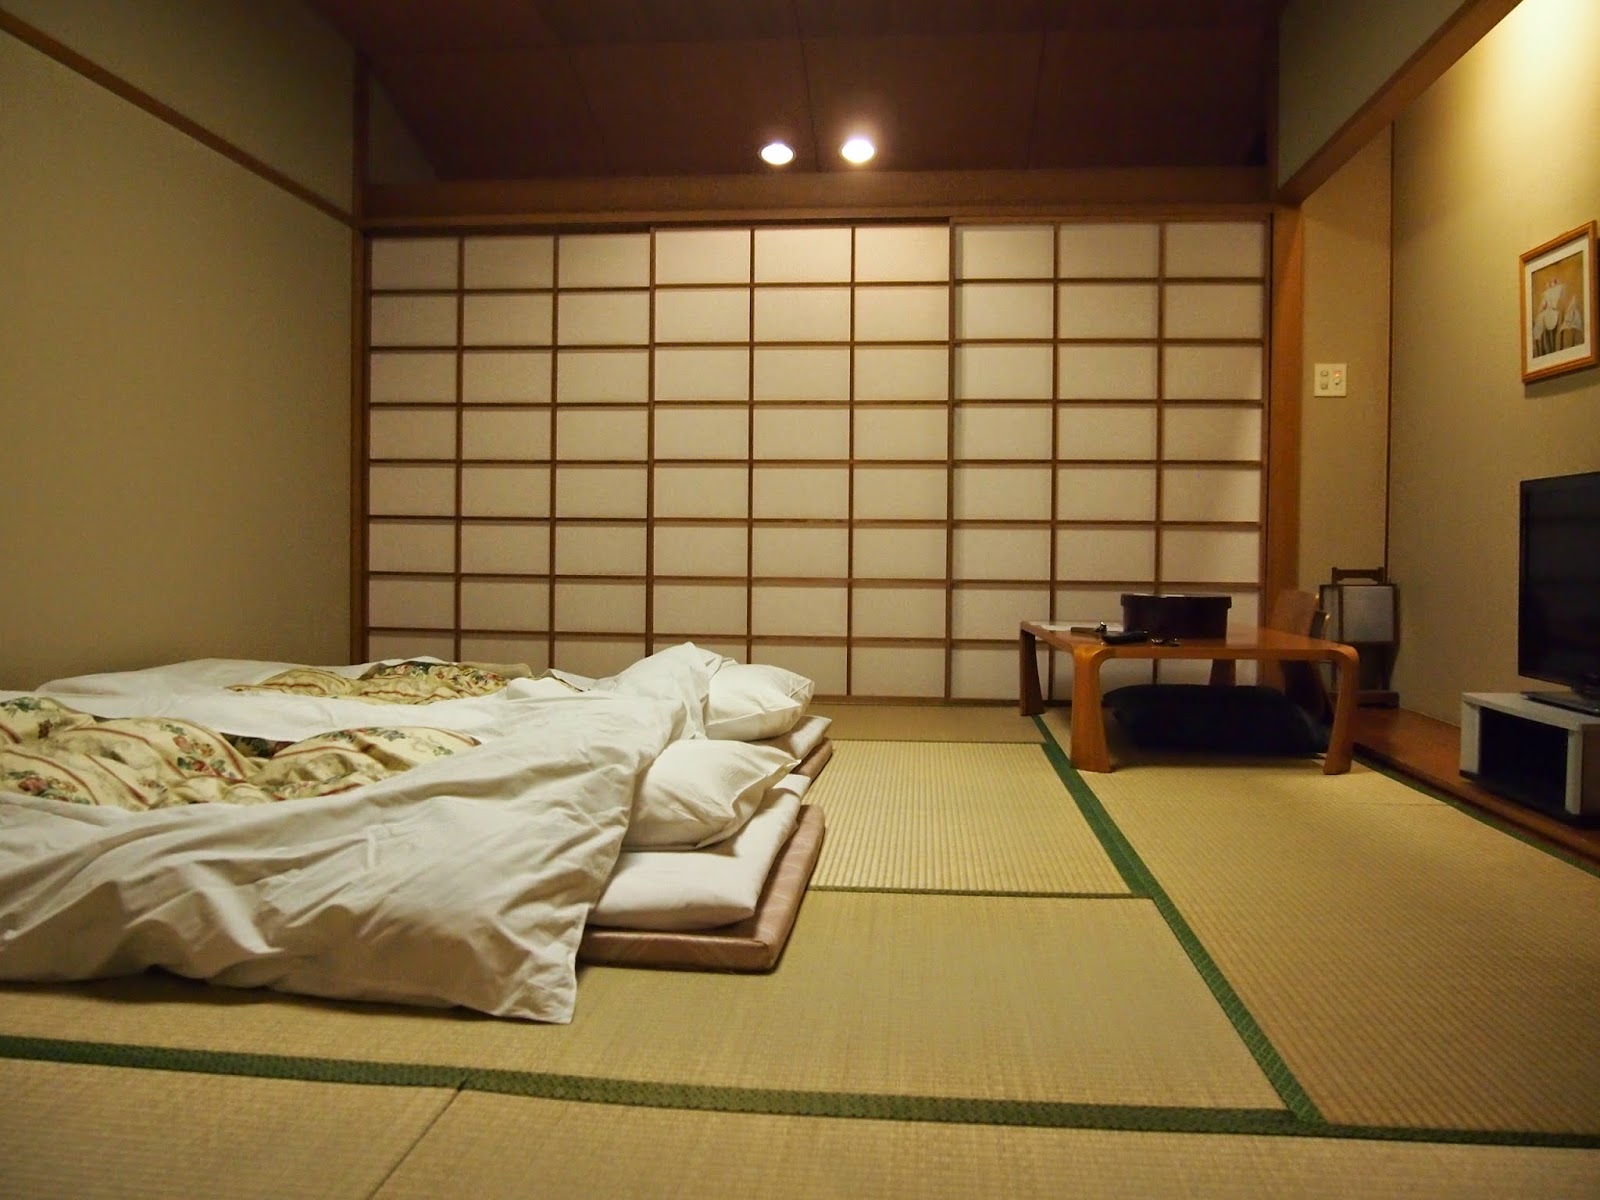 Foto interna camera da letto in stile giapponese